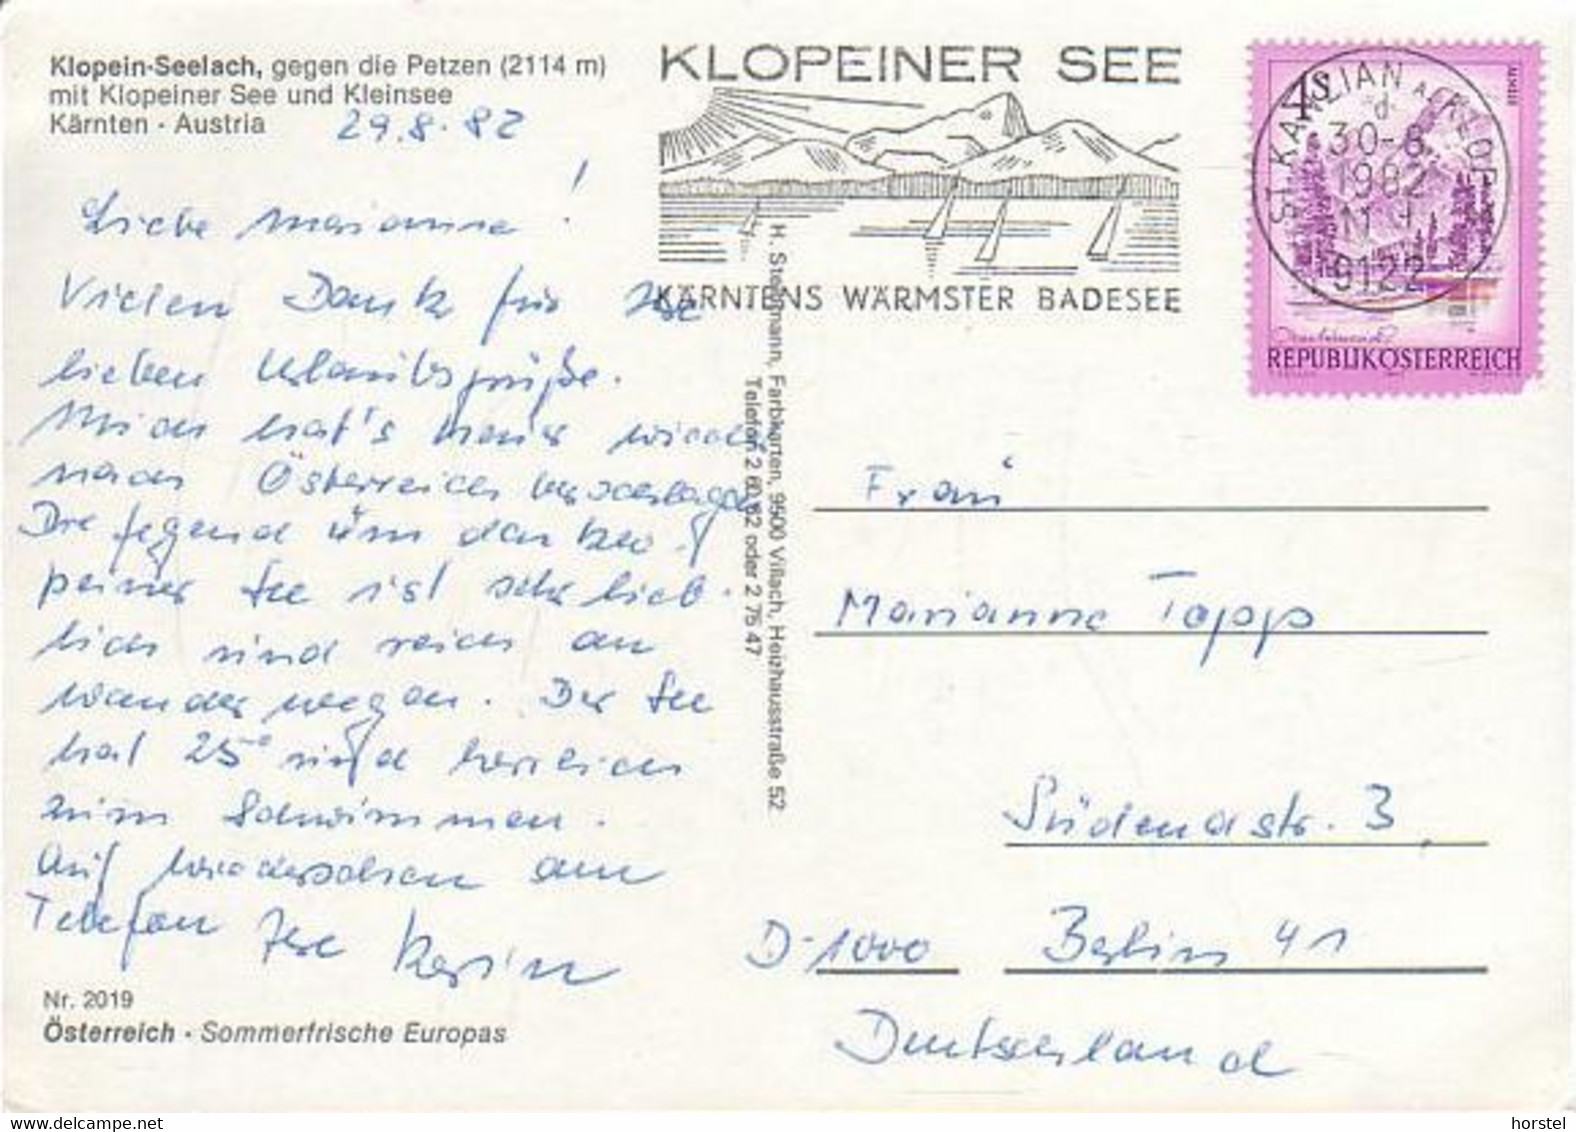 Austria - 9122 St. Kanzian  - Klopein - Seelach -  Klopeiner See - Nice Stamp - Klopeinersee-Orte